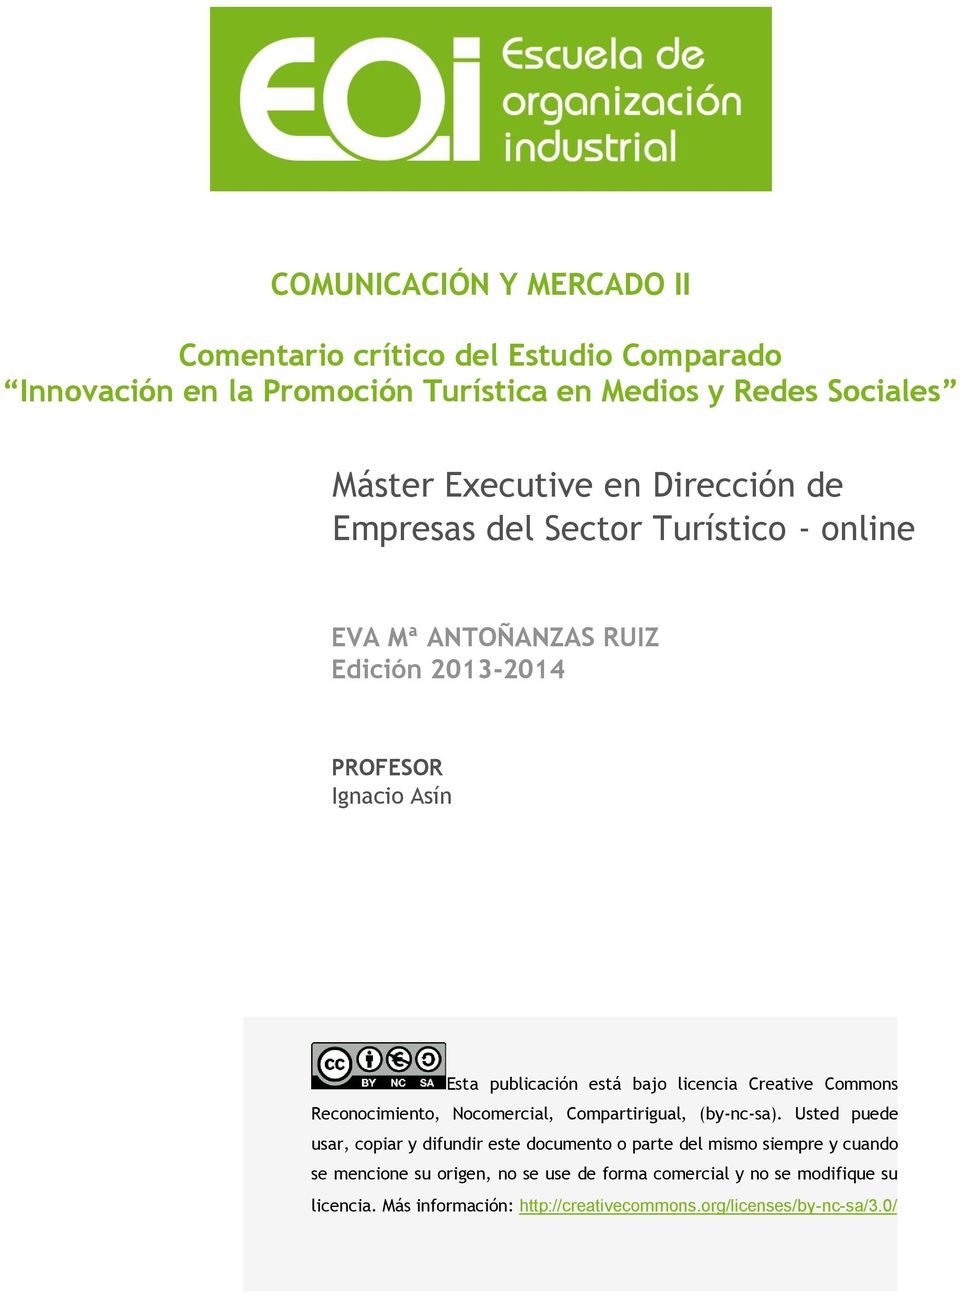 Creative Commons Reconocimiento, Nocomercial, Compartirigual, (by-nc-sa).